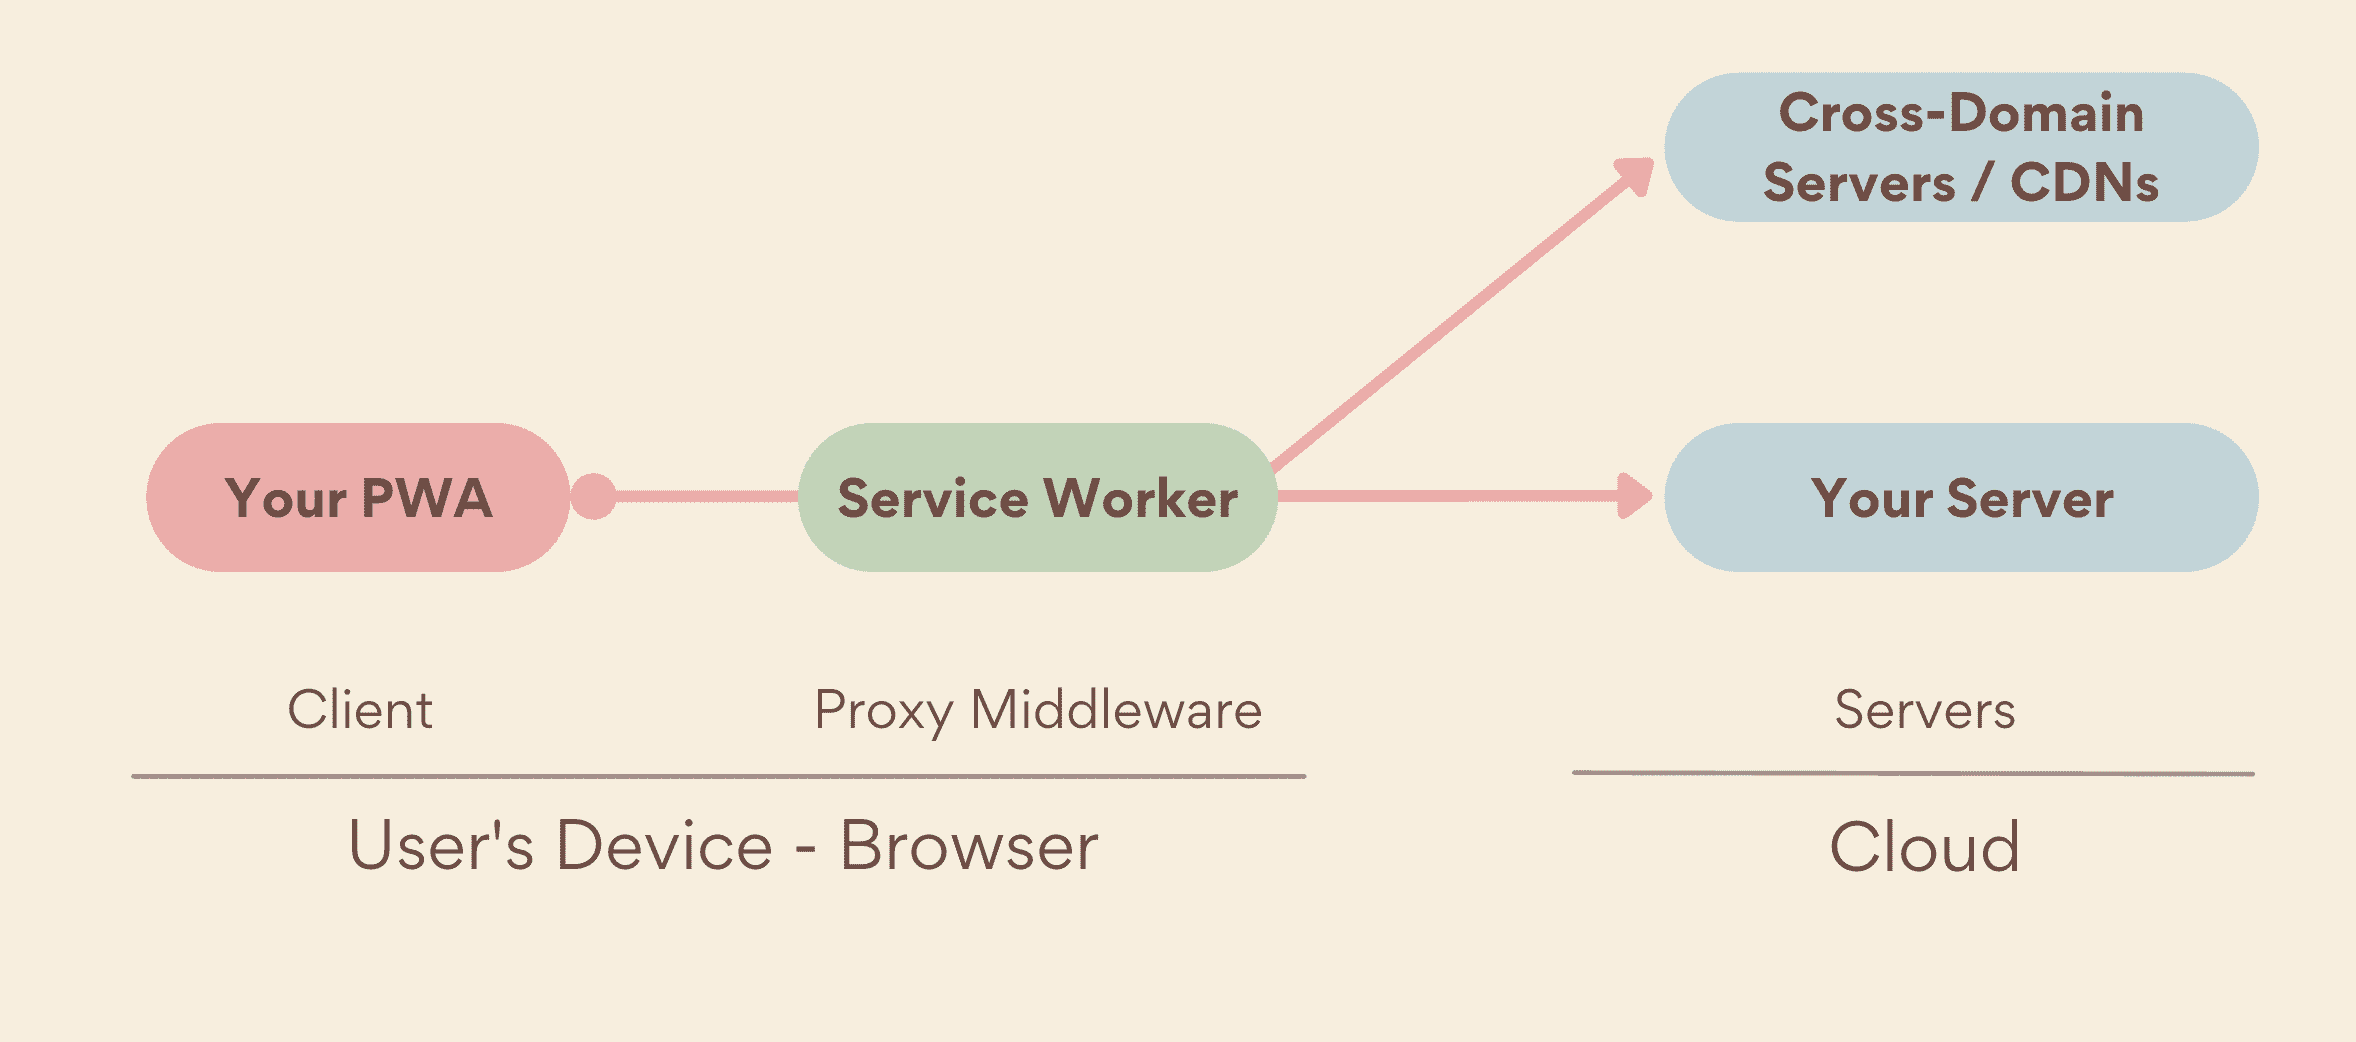 Ein Service Worker als Middleware-Proxy, der geräteseitig zwischen Ihrer PWA und Servern ausgeführt wird und sowohl Ihre eigenen als auch domainübergreifenden Server umfasst.